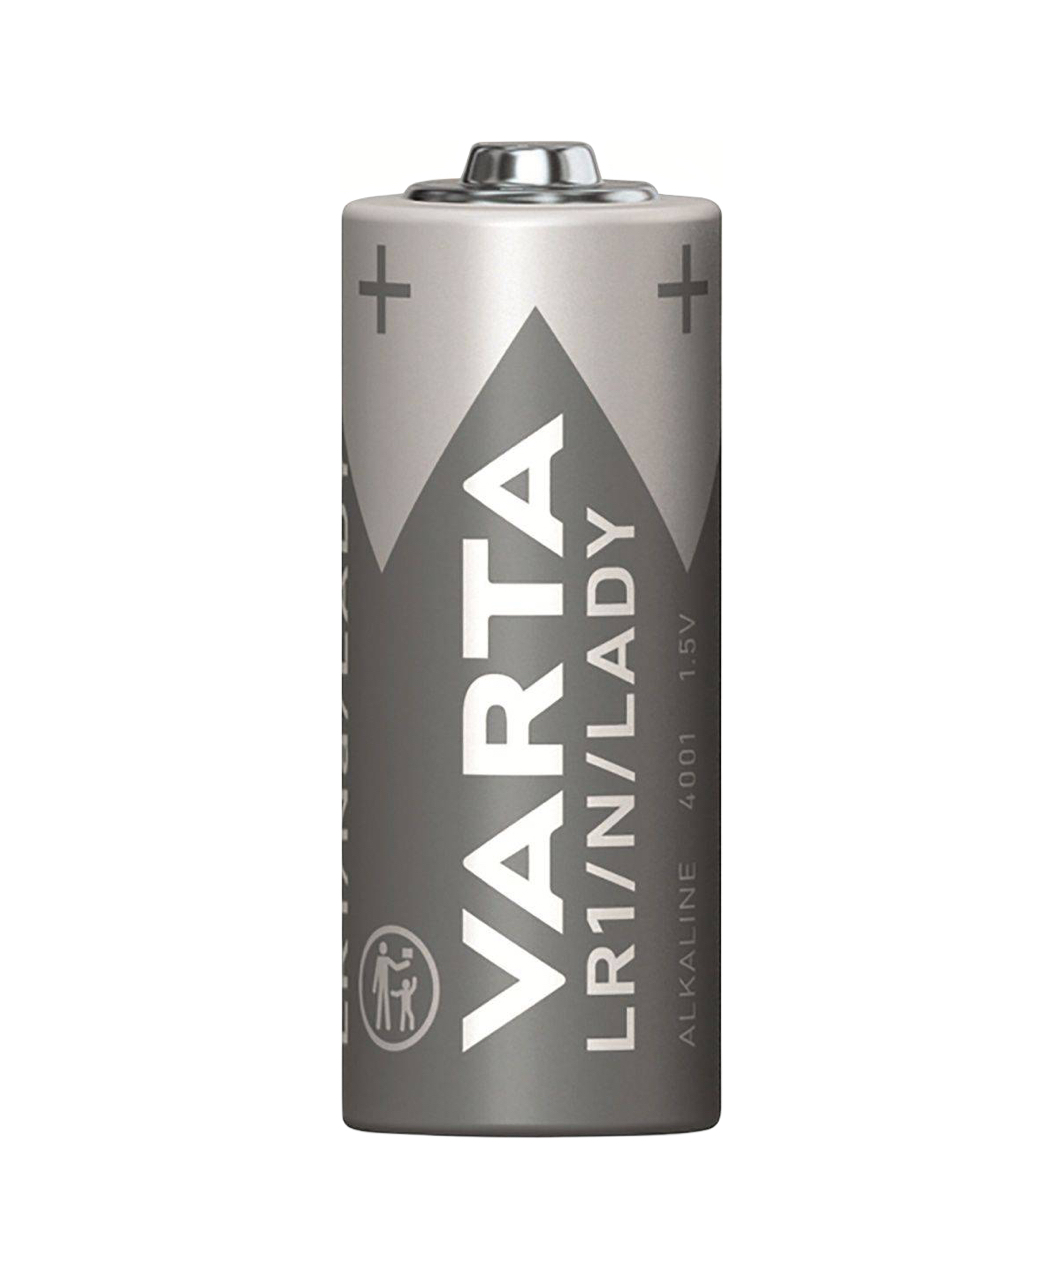 VARTA батарейки LR1/N (2 шт.)